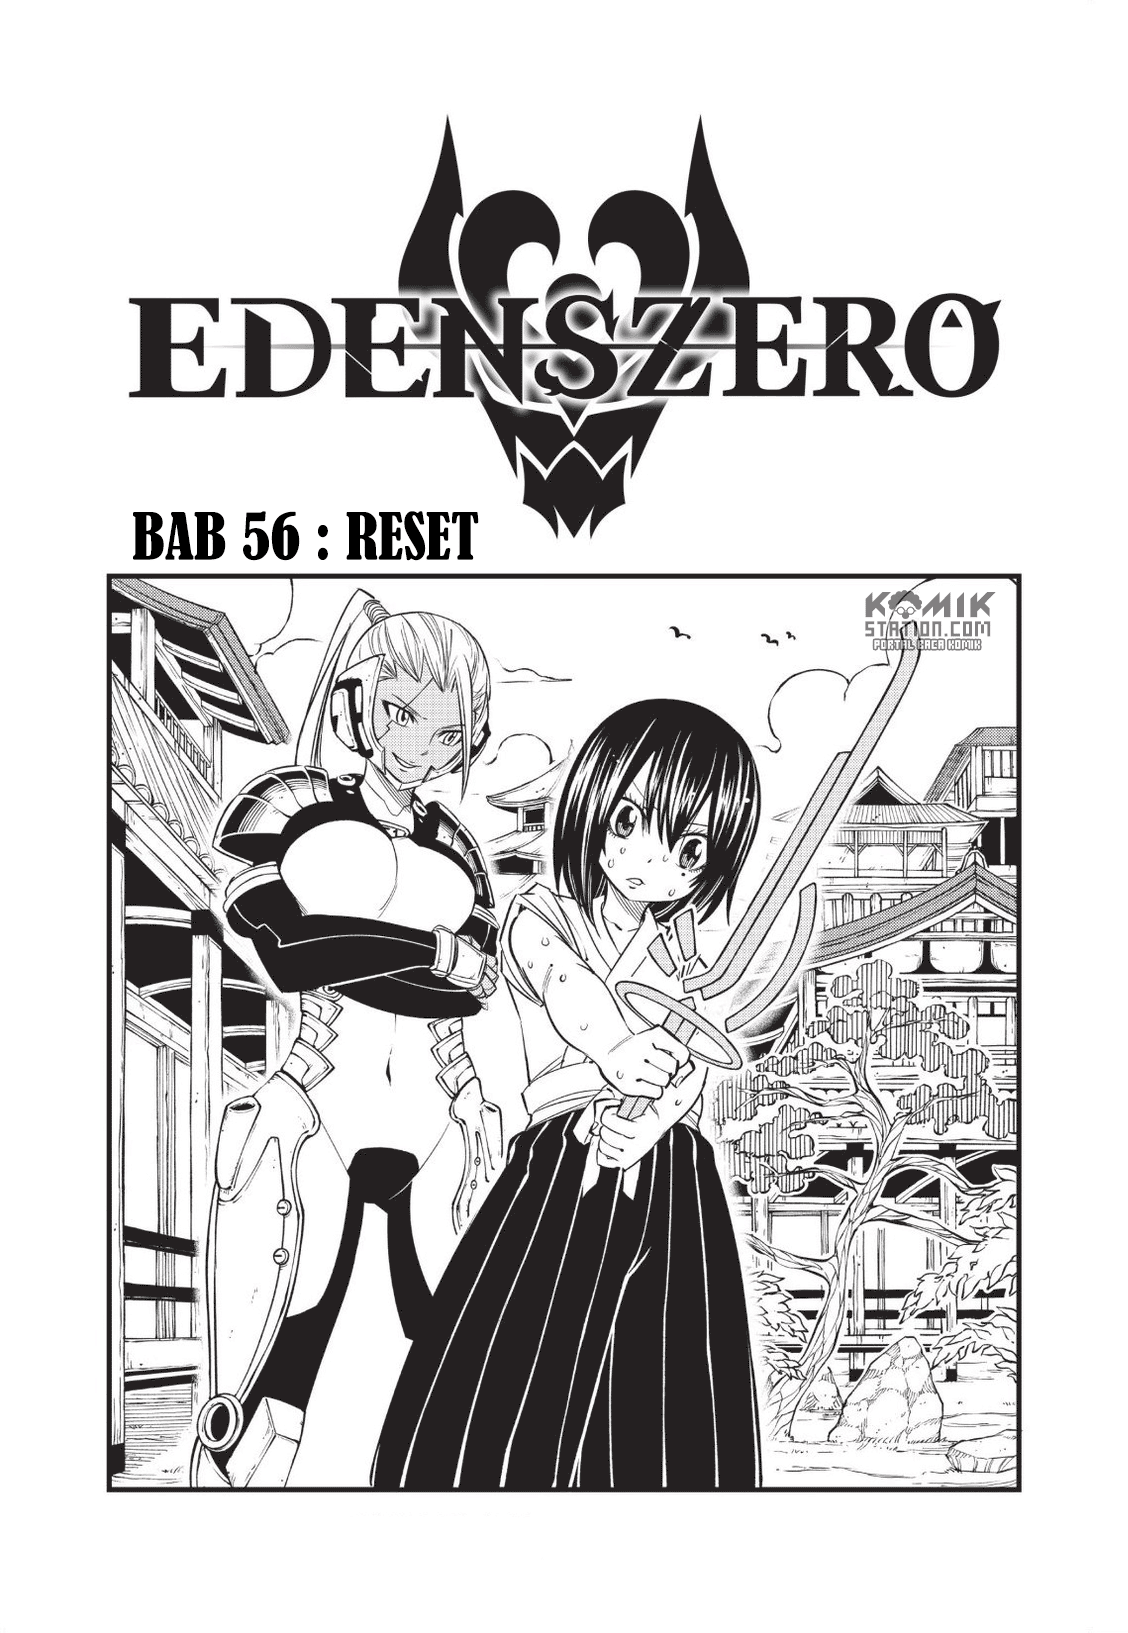 Eden’s Zero Chapter 56